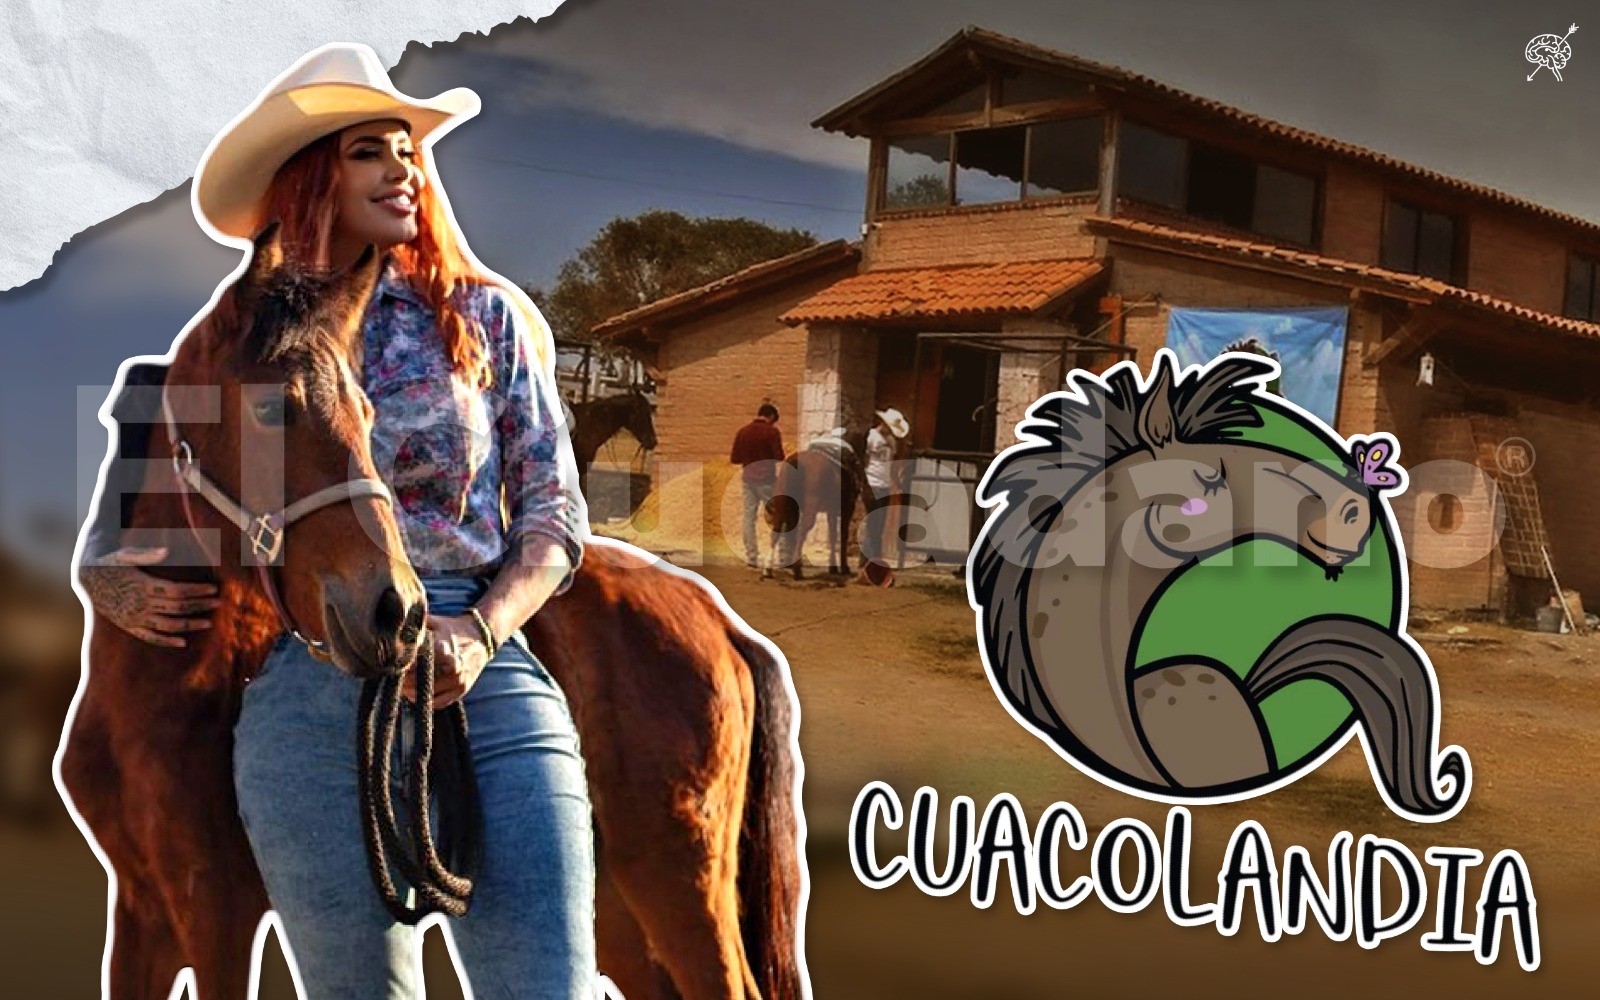 ¡Cuacolandia en la Feria de Puebla!, interactúa con un caballo